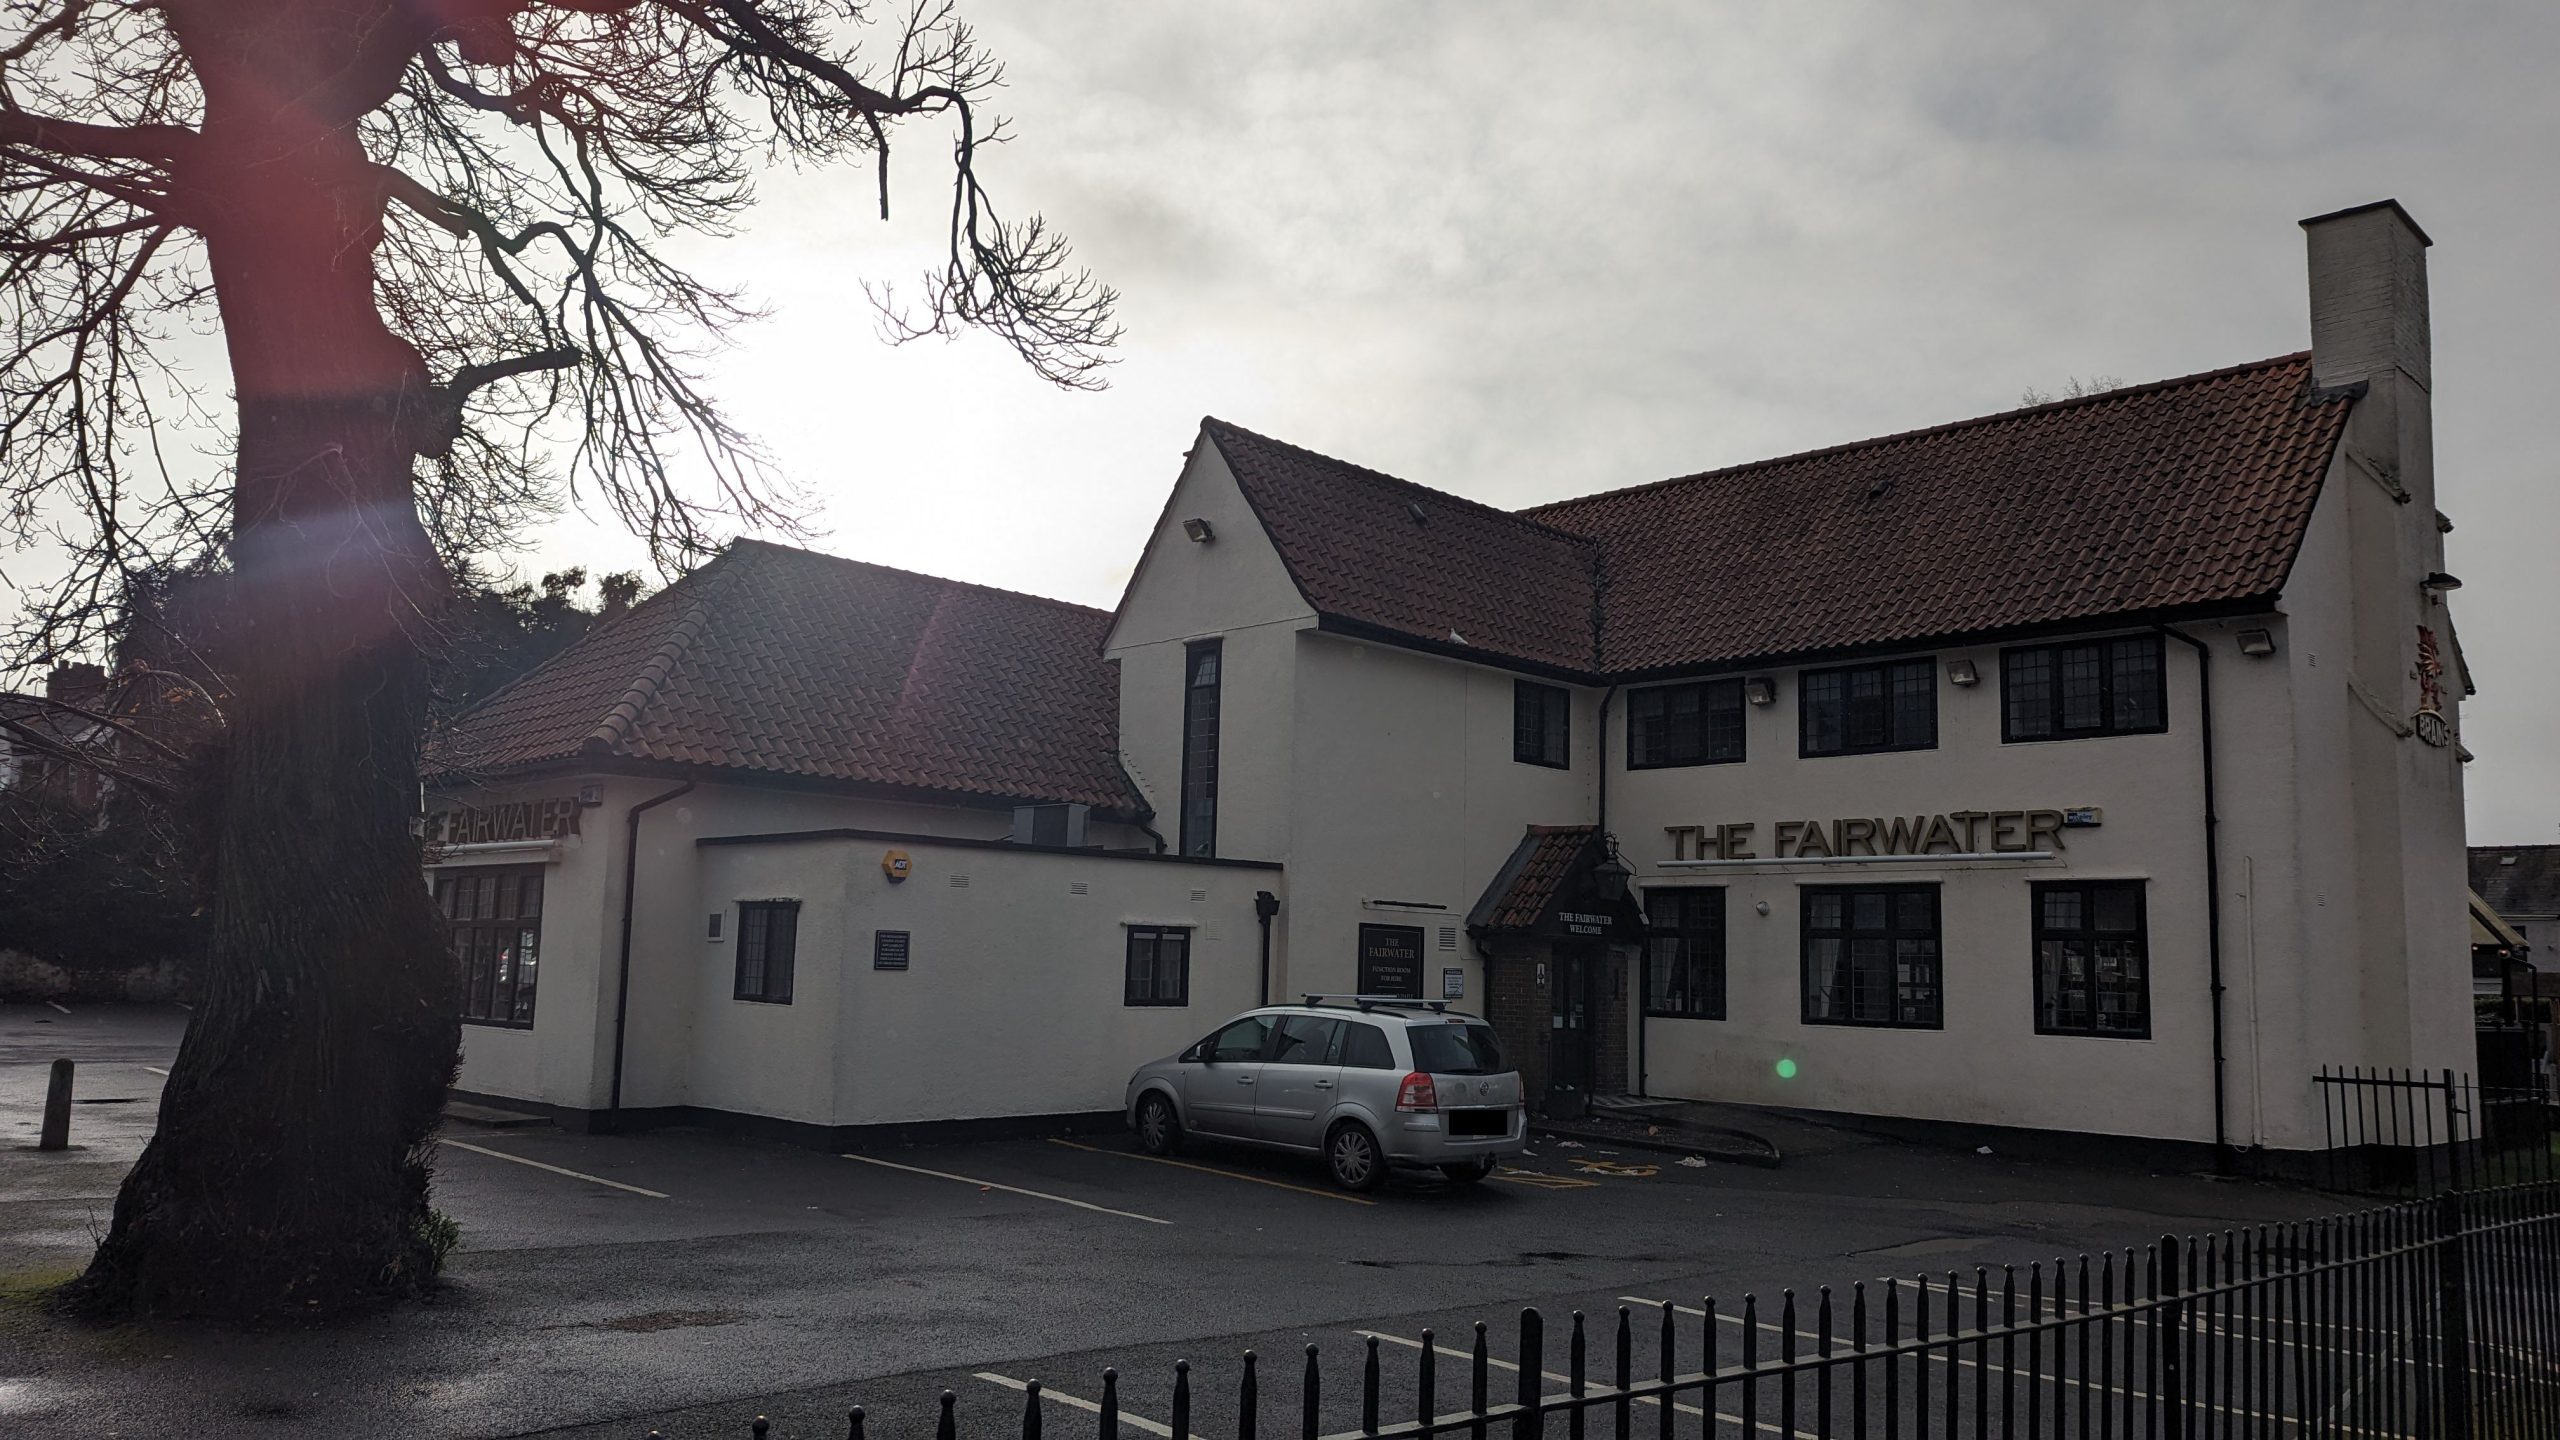 Photo of The Fairwater pub Cardiff